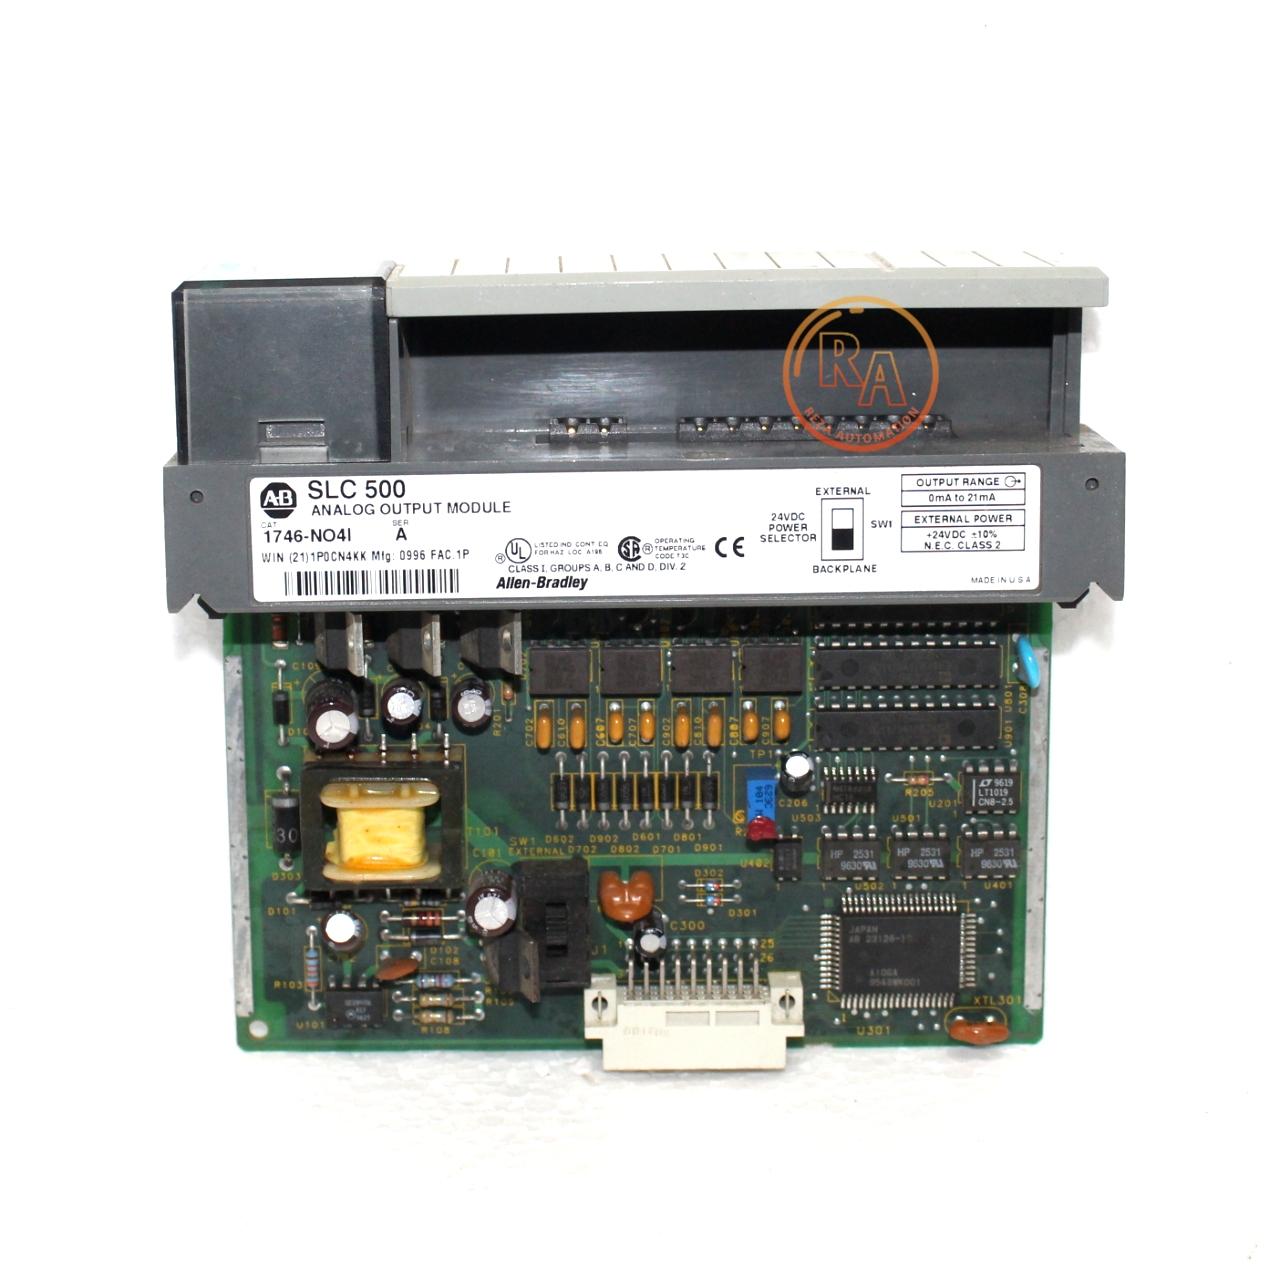 Allen-Bradley 1746-NO4I SLC 500 Analog Current Output Module